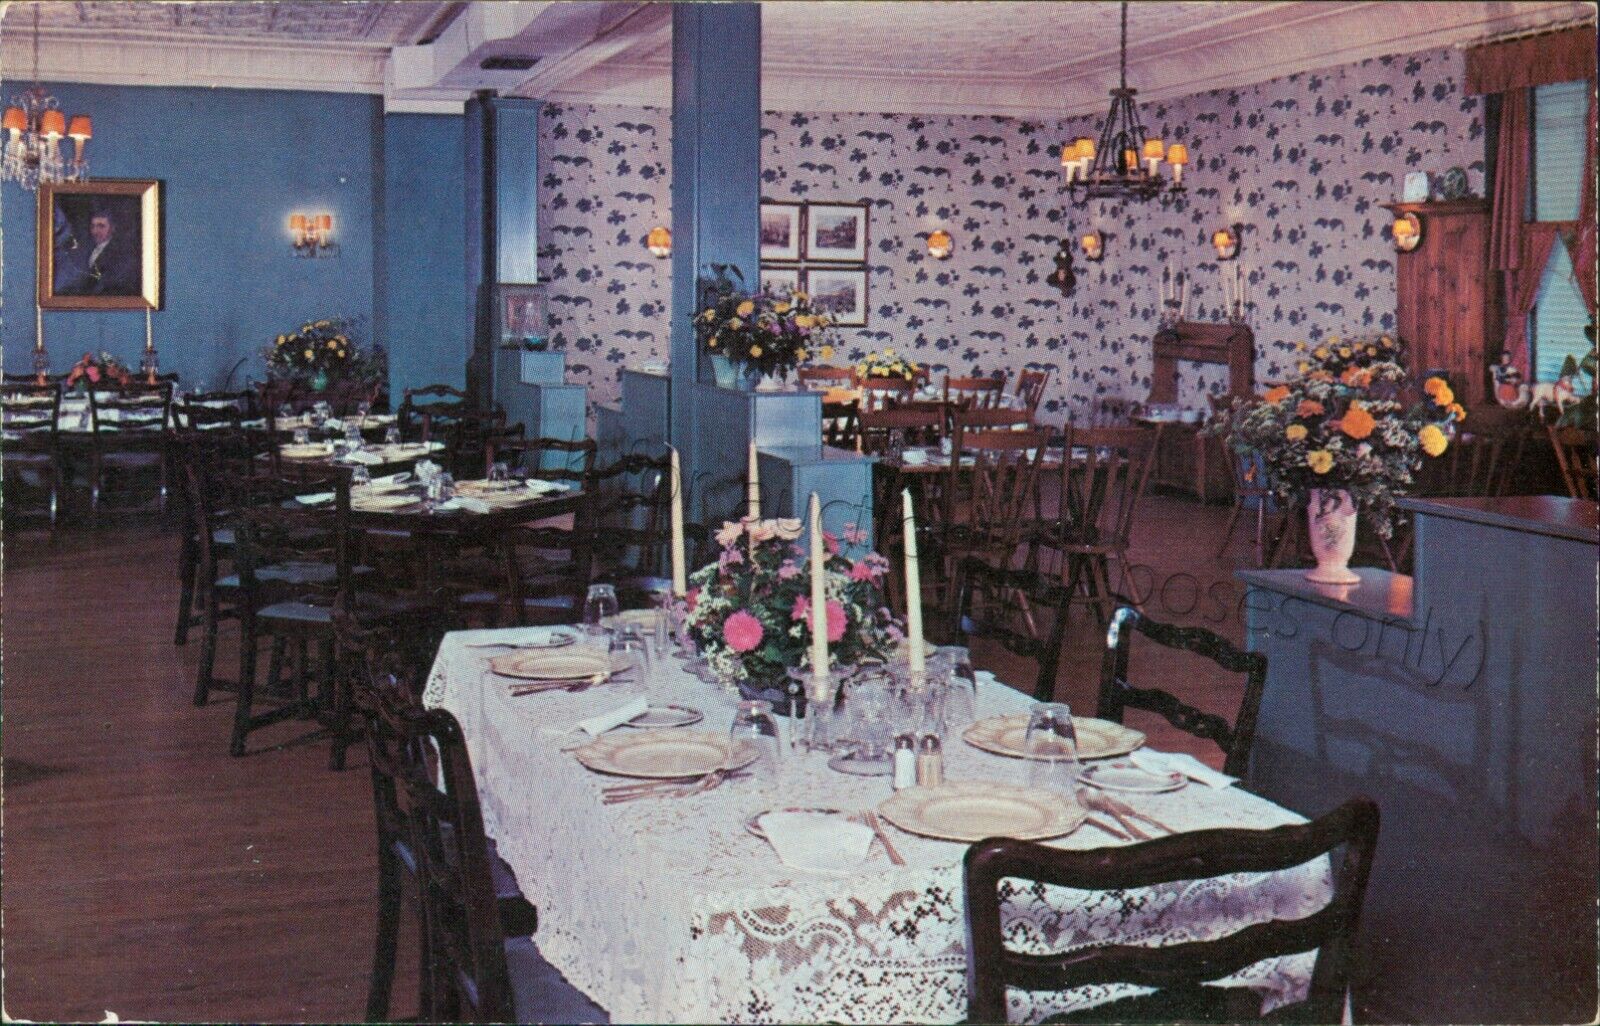 Plainfield, New Jersey - Clara Louise Tea Room Interior - Vintage NJ Postcard